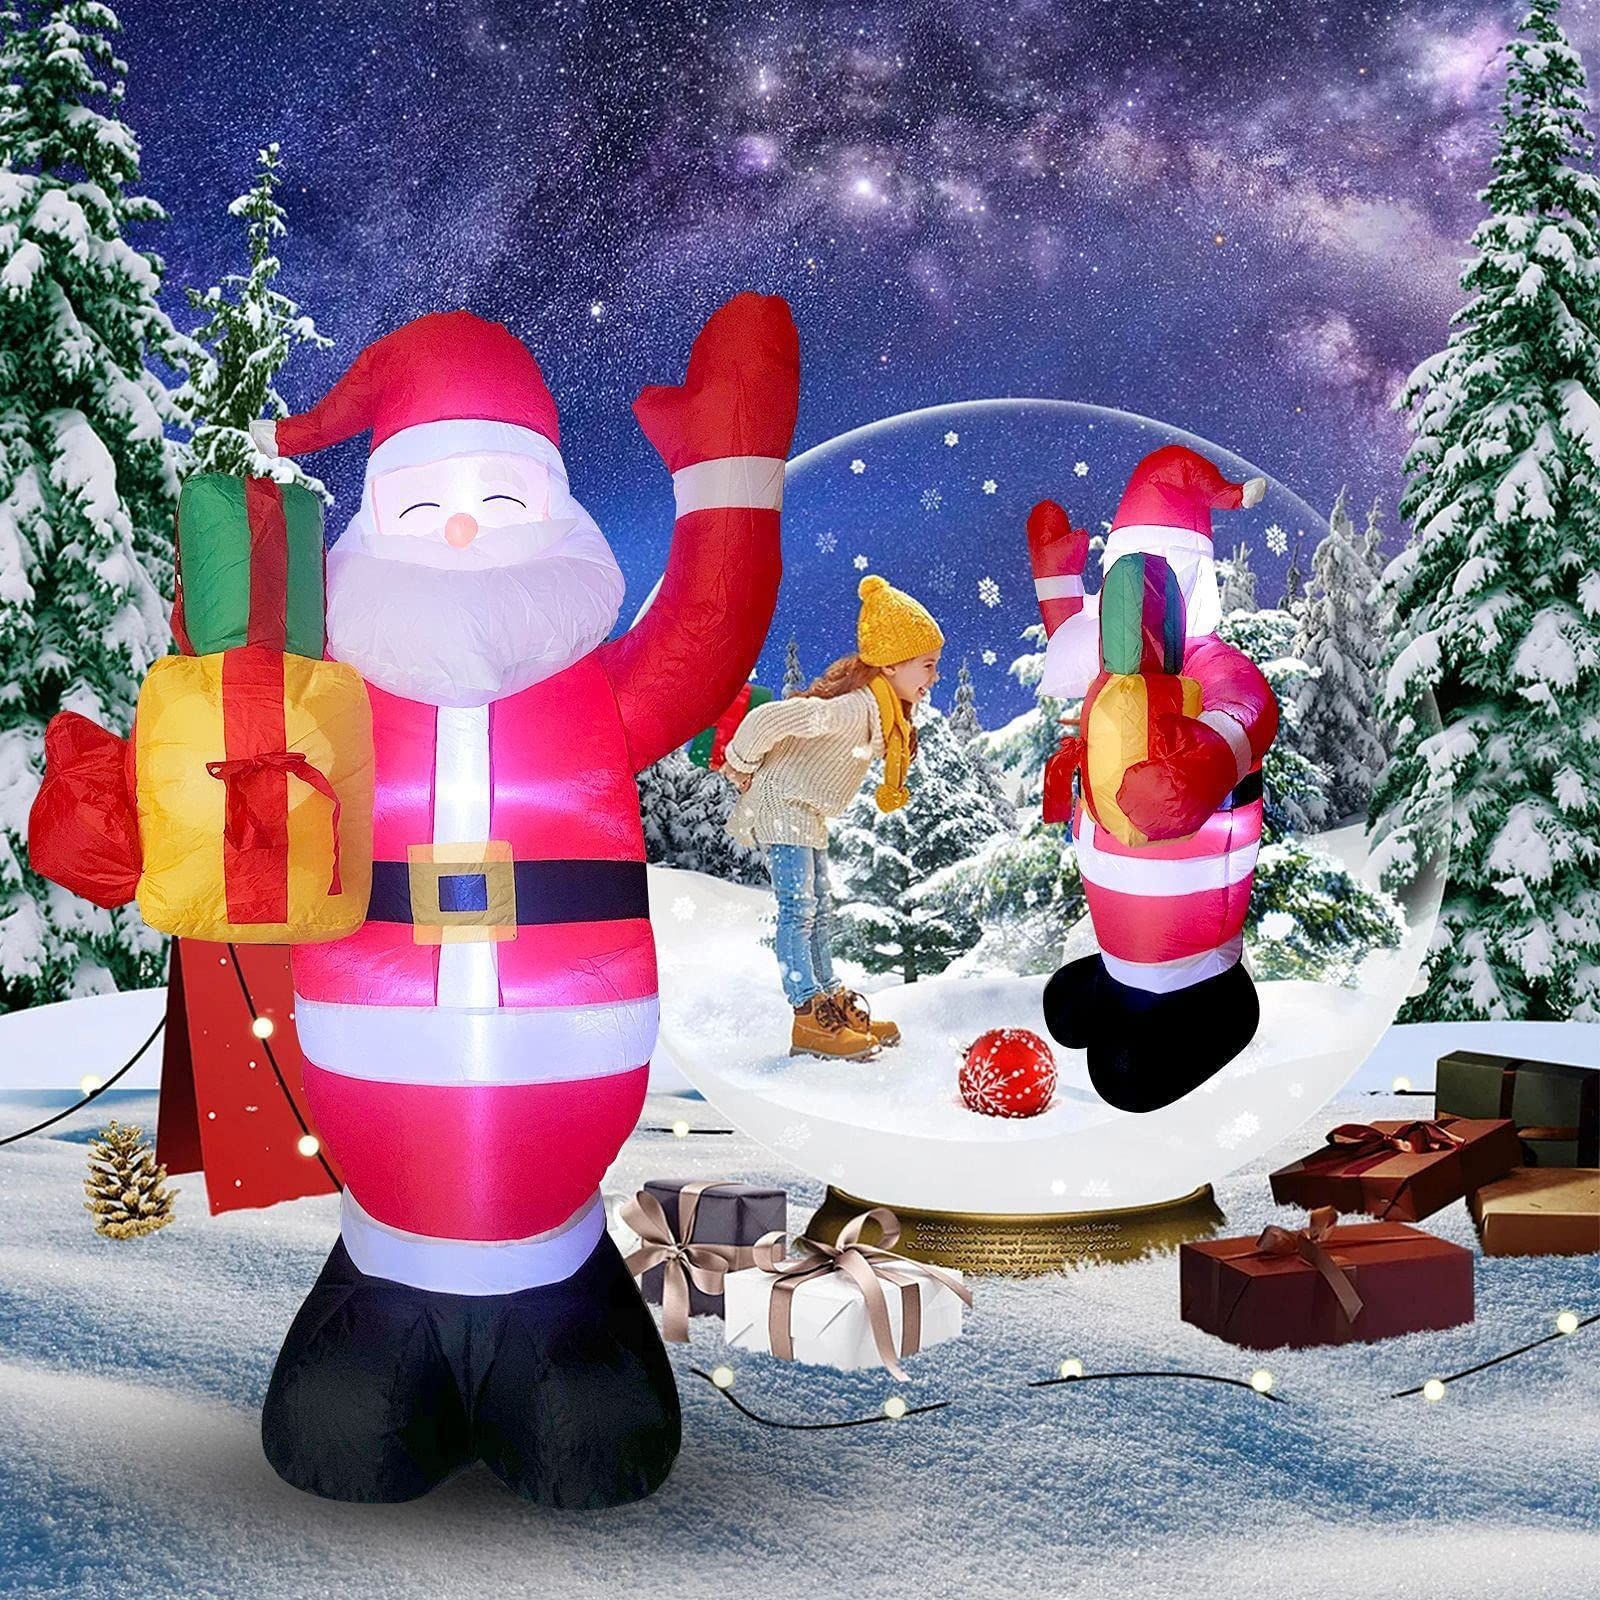 クリスマス 光る 雪だるま カボチャ サンタクロース ジンジャー